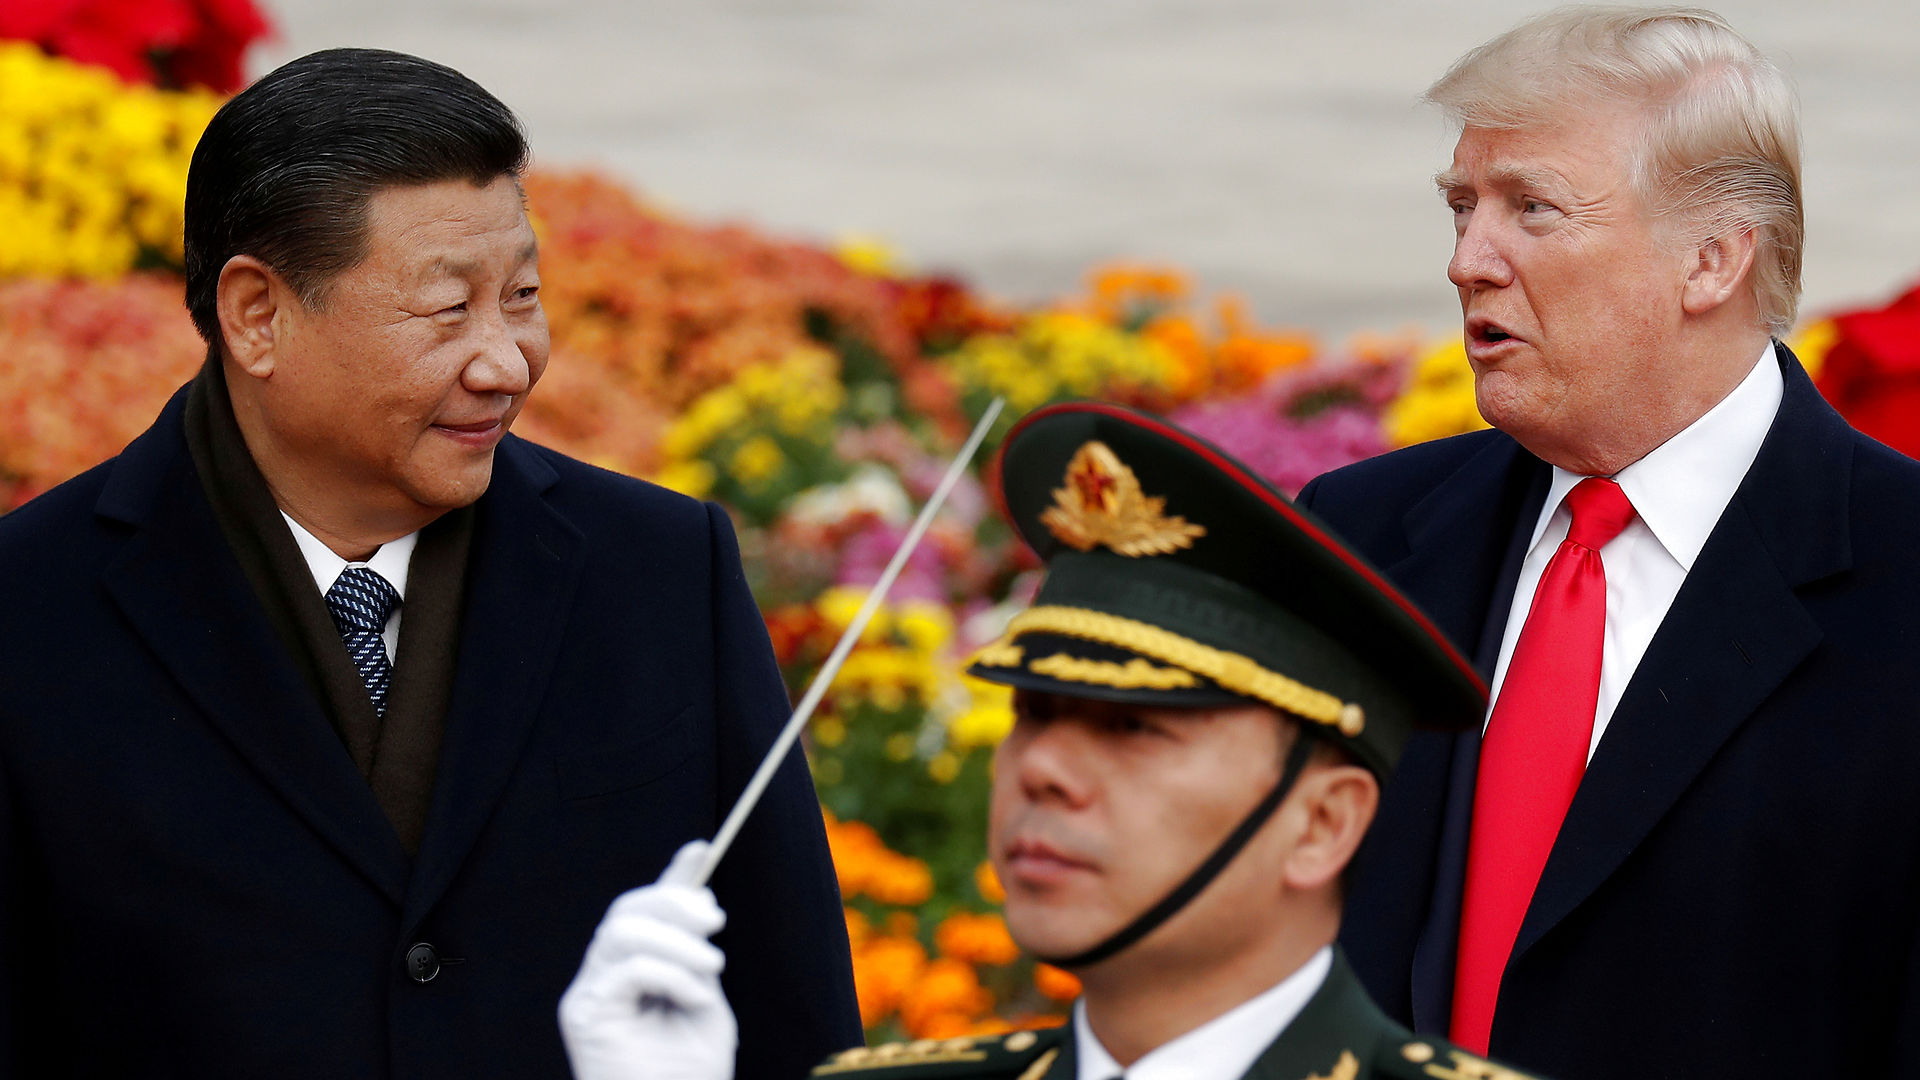 RÆSON: Hvem foretrækker Beijing i Det Hvide Hus? GEORGE MAGNUS: De vil langt hellere have genvalg til Trump, for de tror, at de kan manipulere og isolere ham